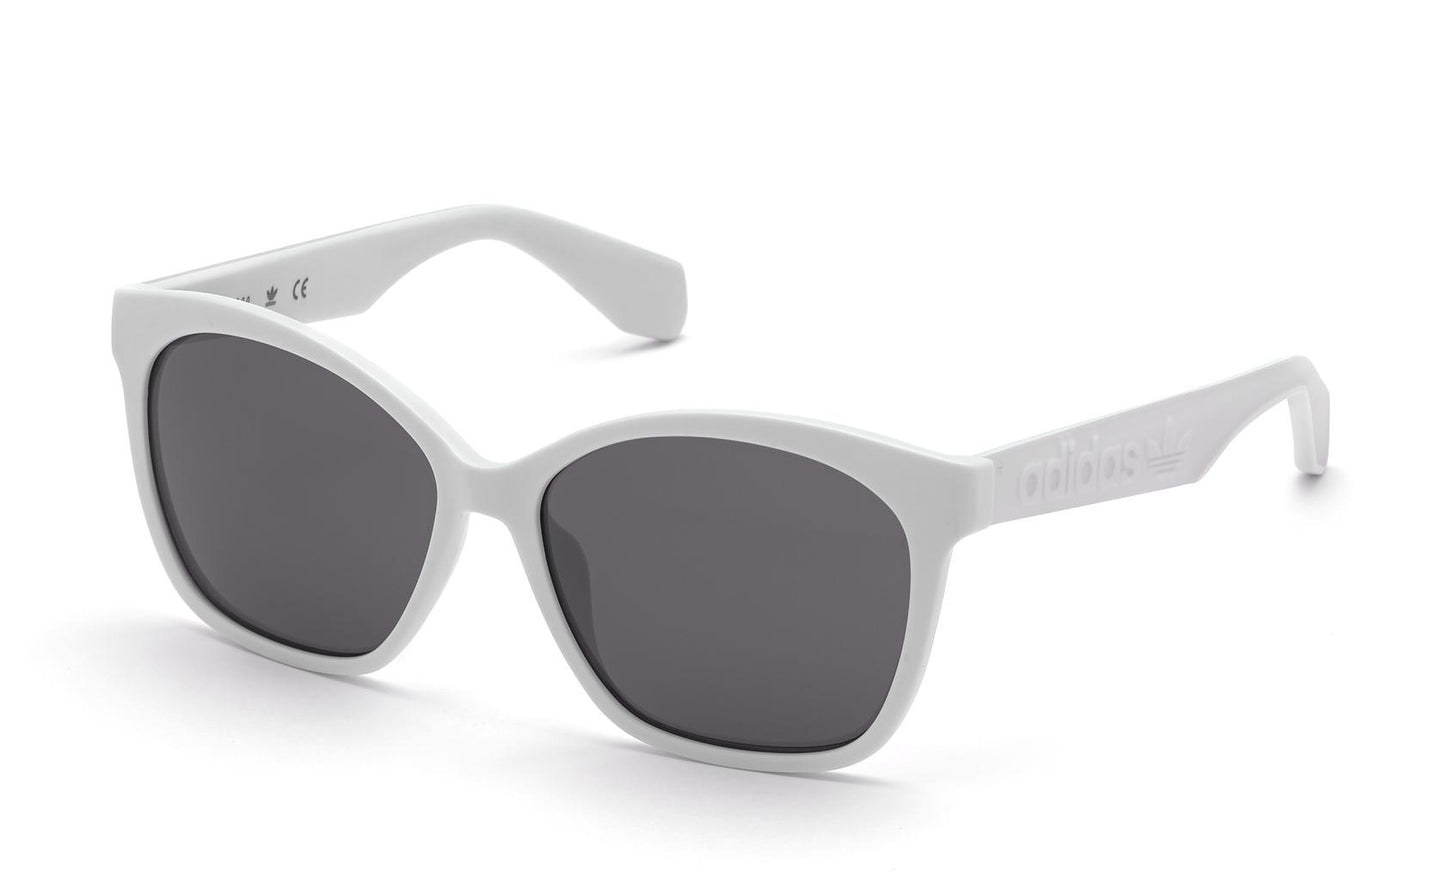 Adidas Originals Sunglasses OR0045 21C